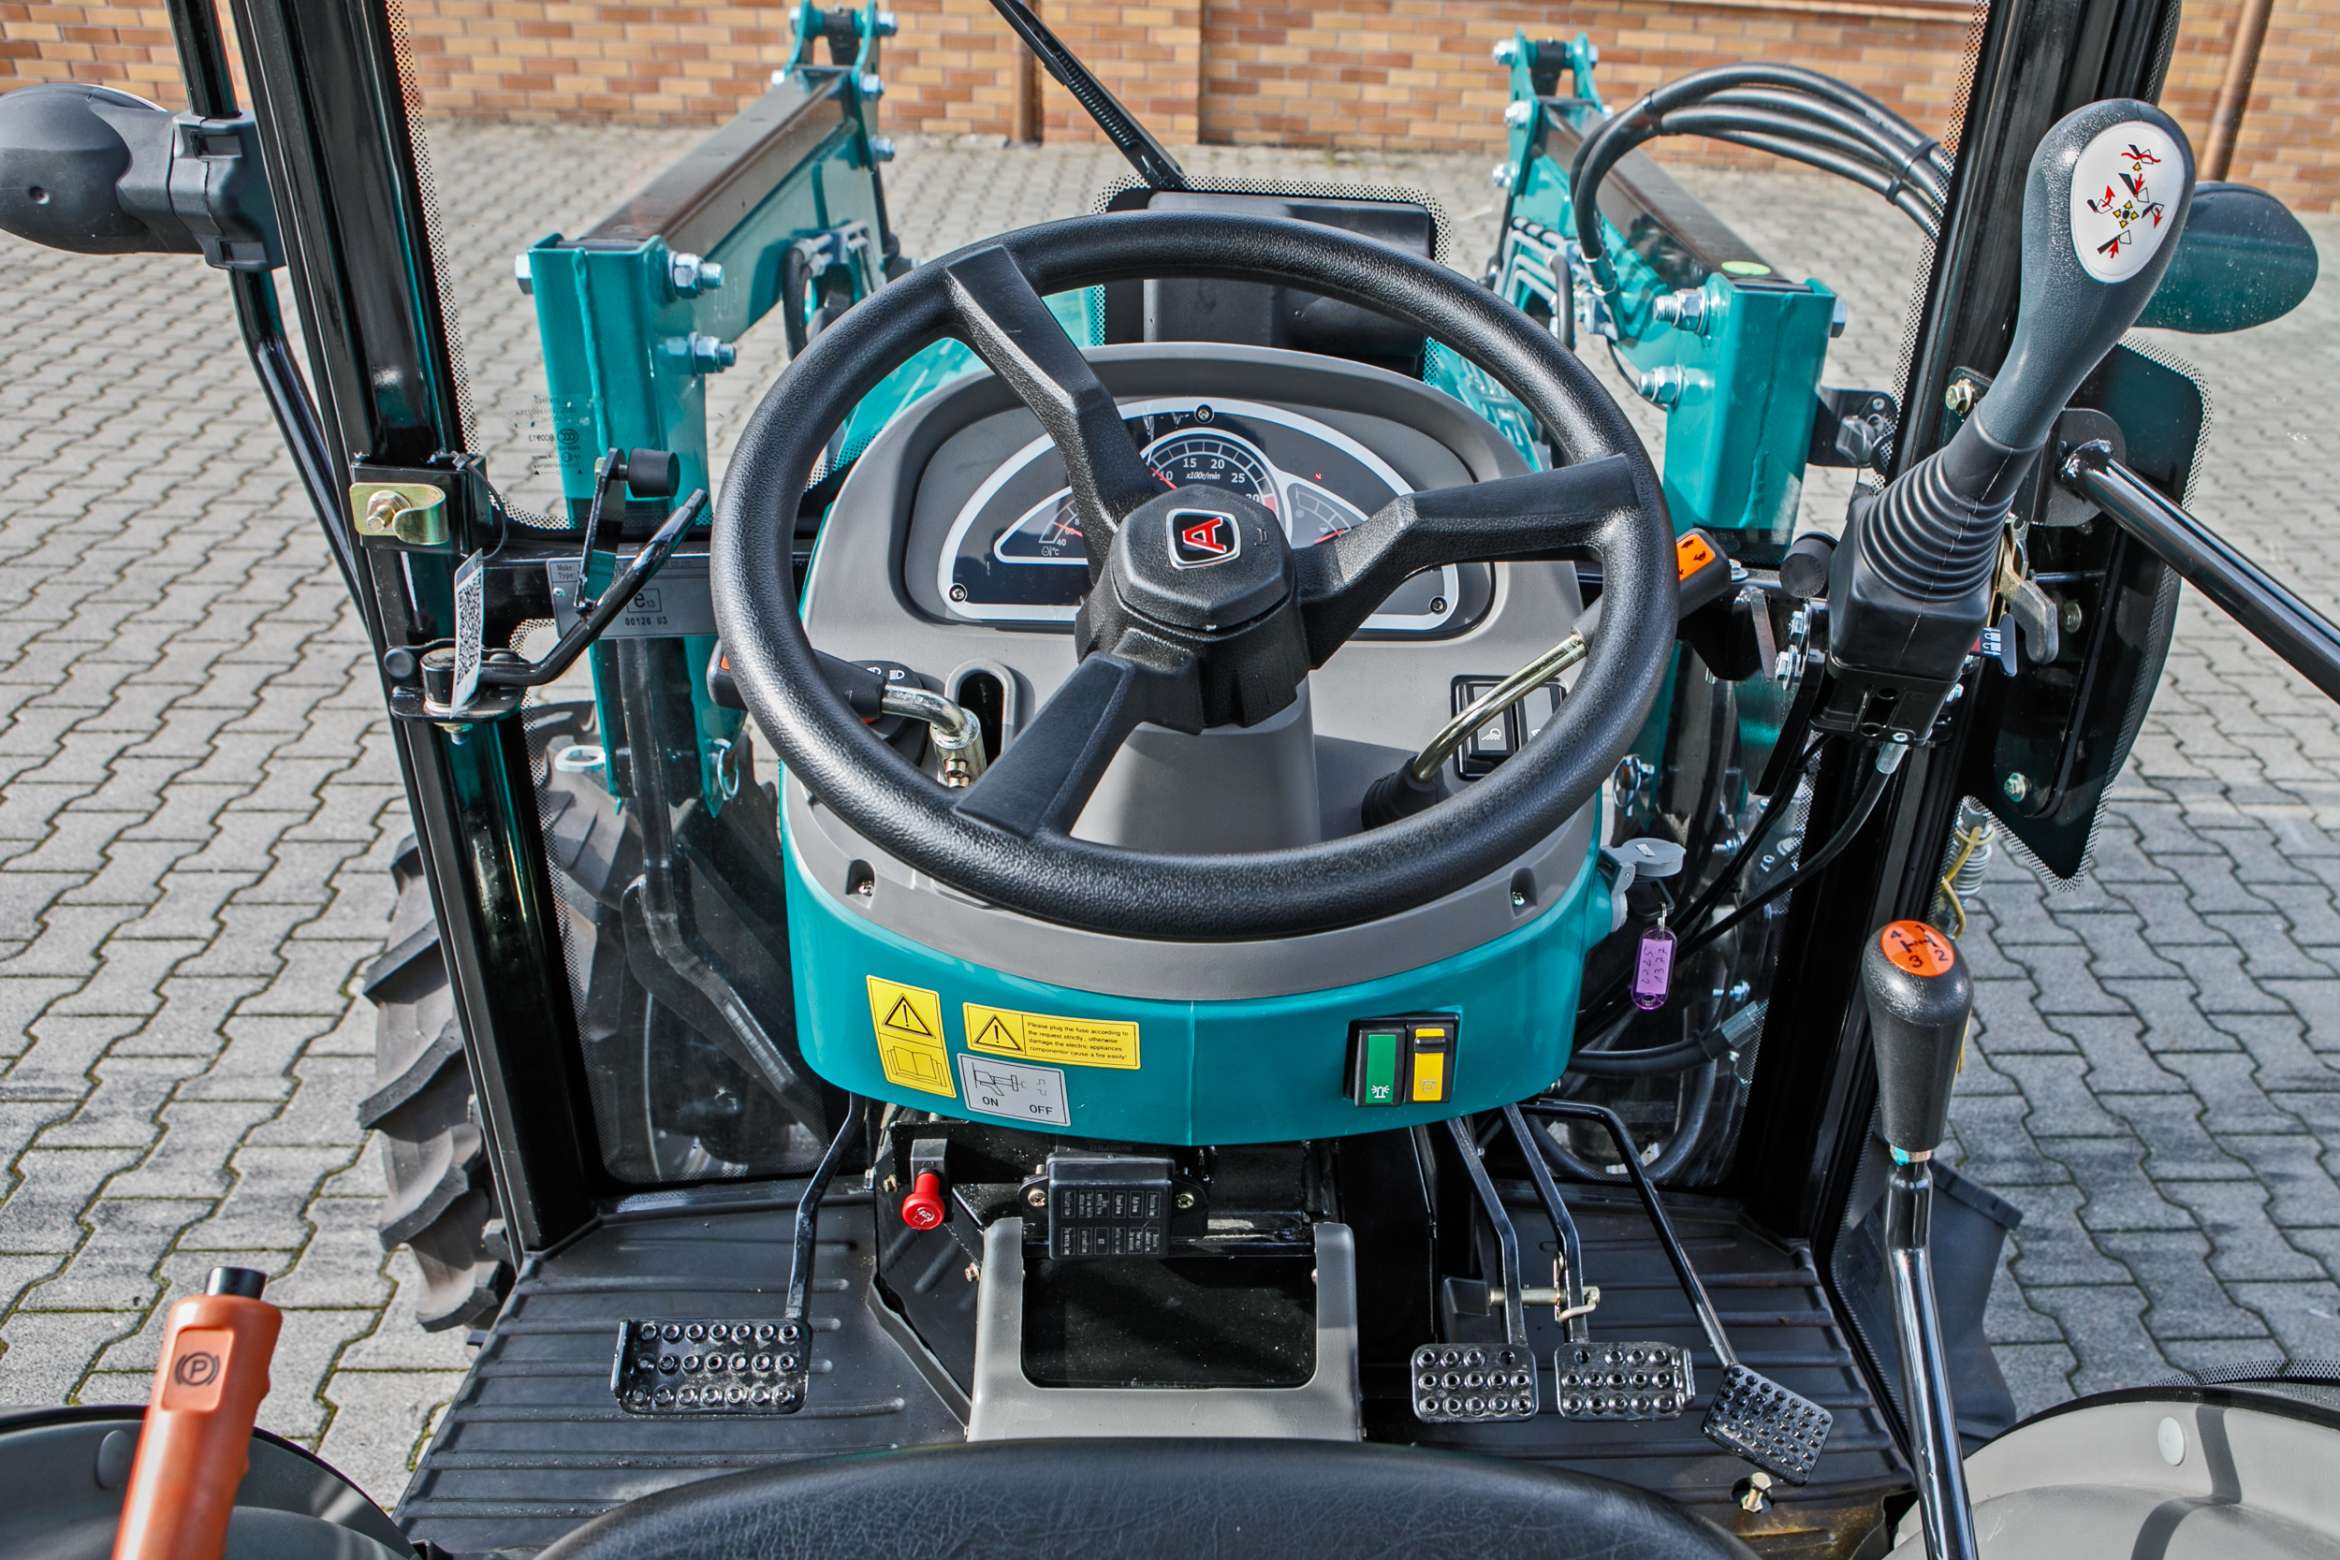 kierownica i licznik w traktorze arbos 2025